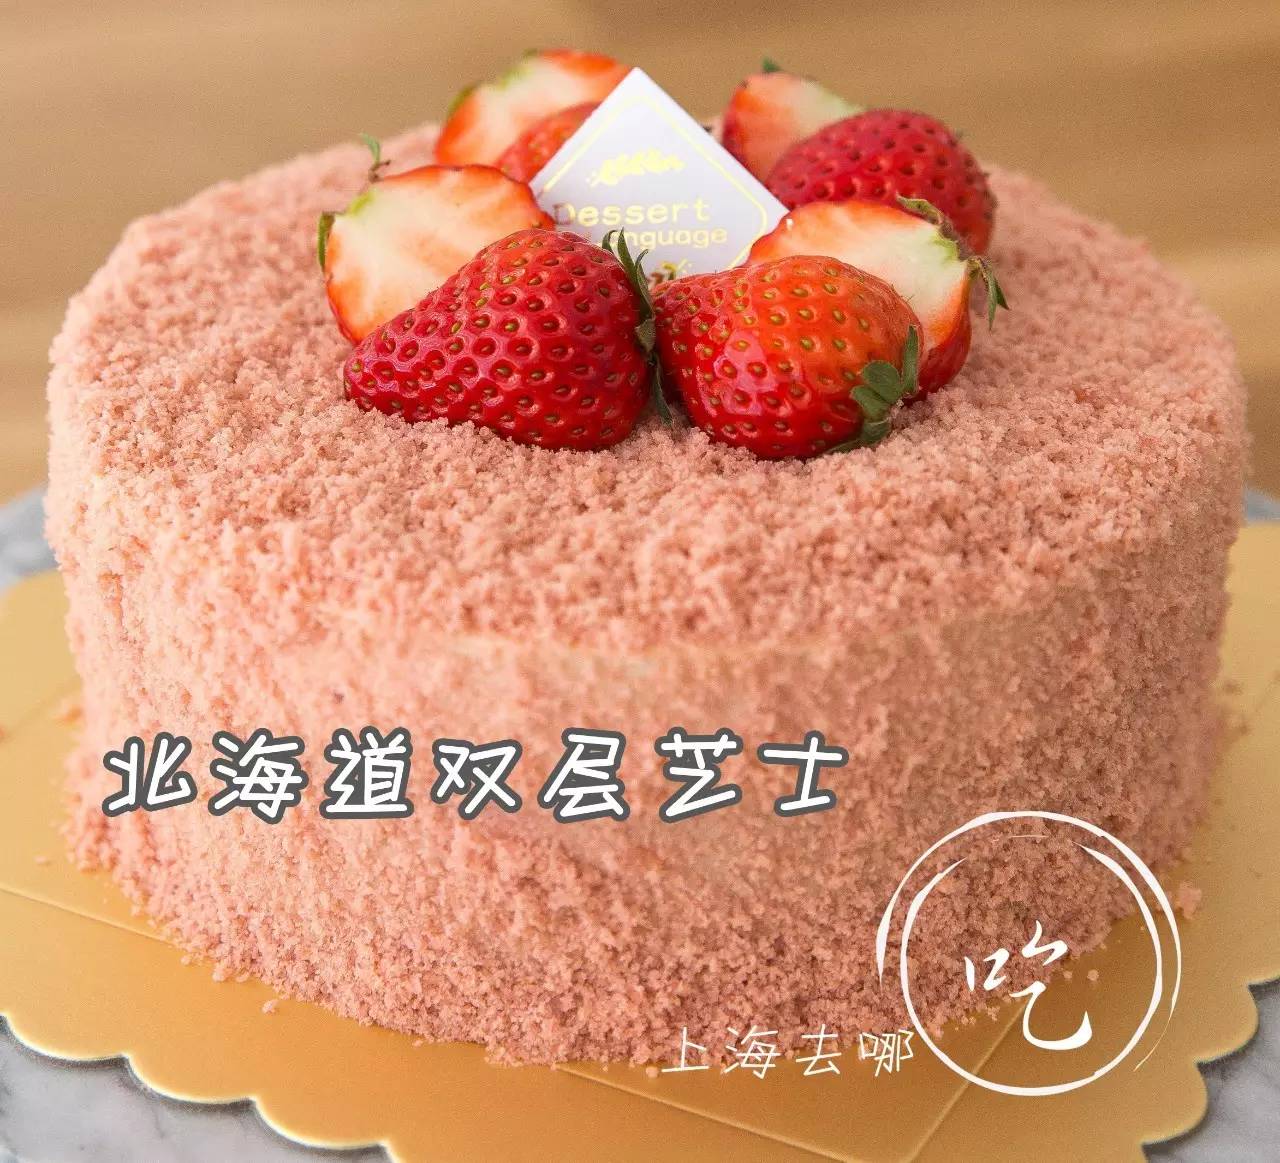 Kazuki Bakery x Agnes Bakery 玫瑰士多啤梨千層蛋糕